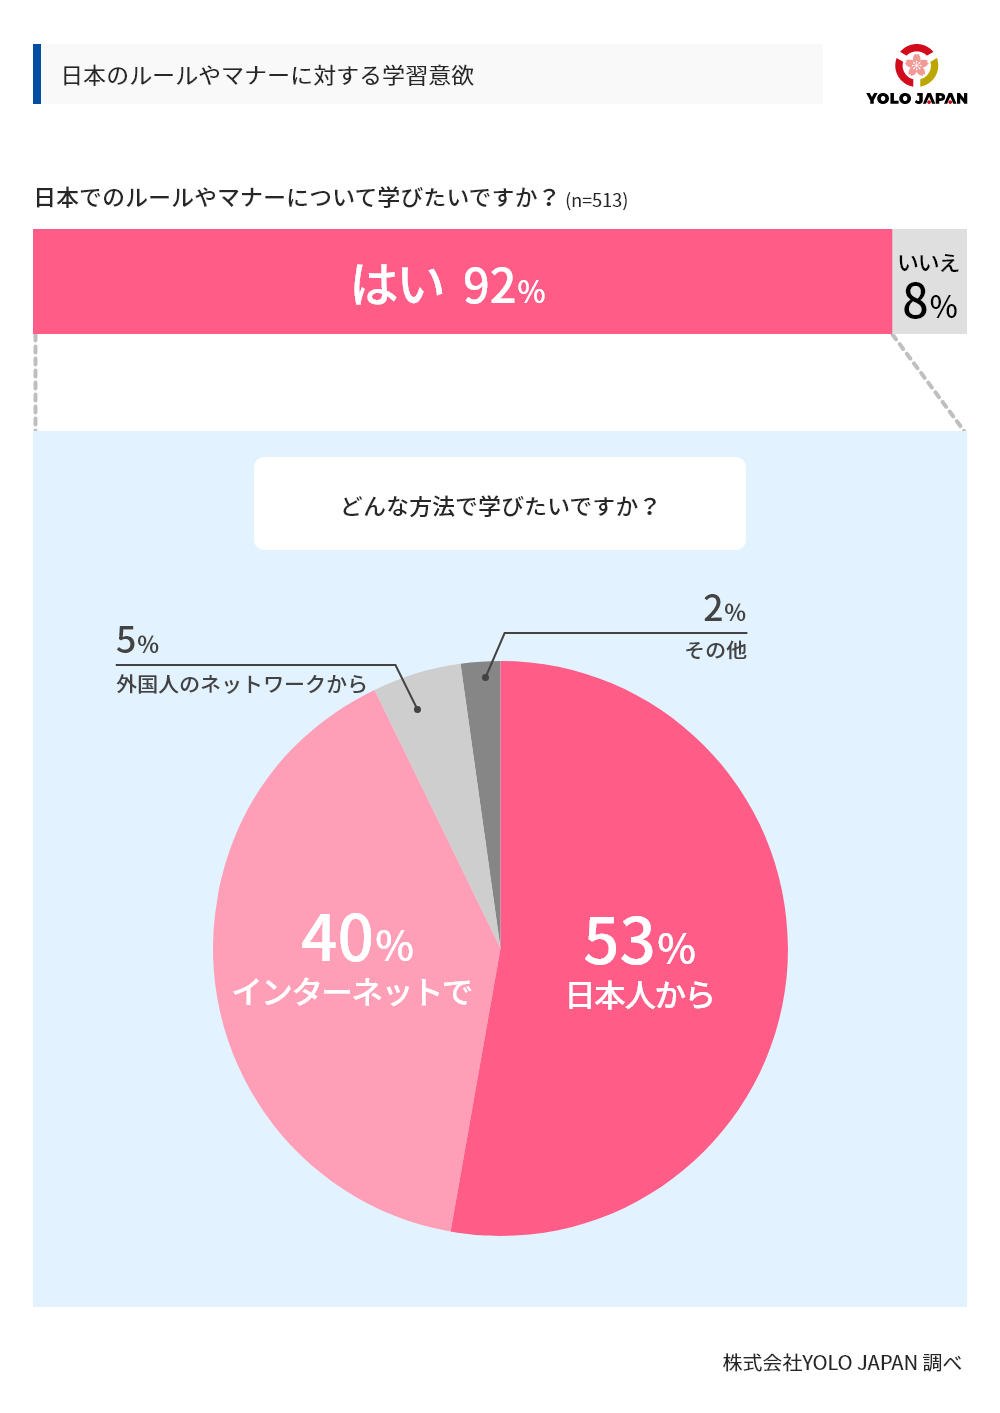 日本のルールやマナーに対する学習意欲についてのグラフ。日本のルールやマナーについて学びたいですかという設問に対し、513人のうち92％が'「はい」と回答。この回答者に対し「どんな方法で学びたいですか」と質問したところ、53％が日本人から、40％がインターネットで、5％が外国人のネットワークから、2％がその他という結果になった。